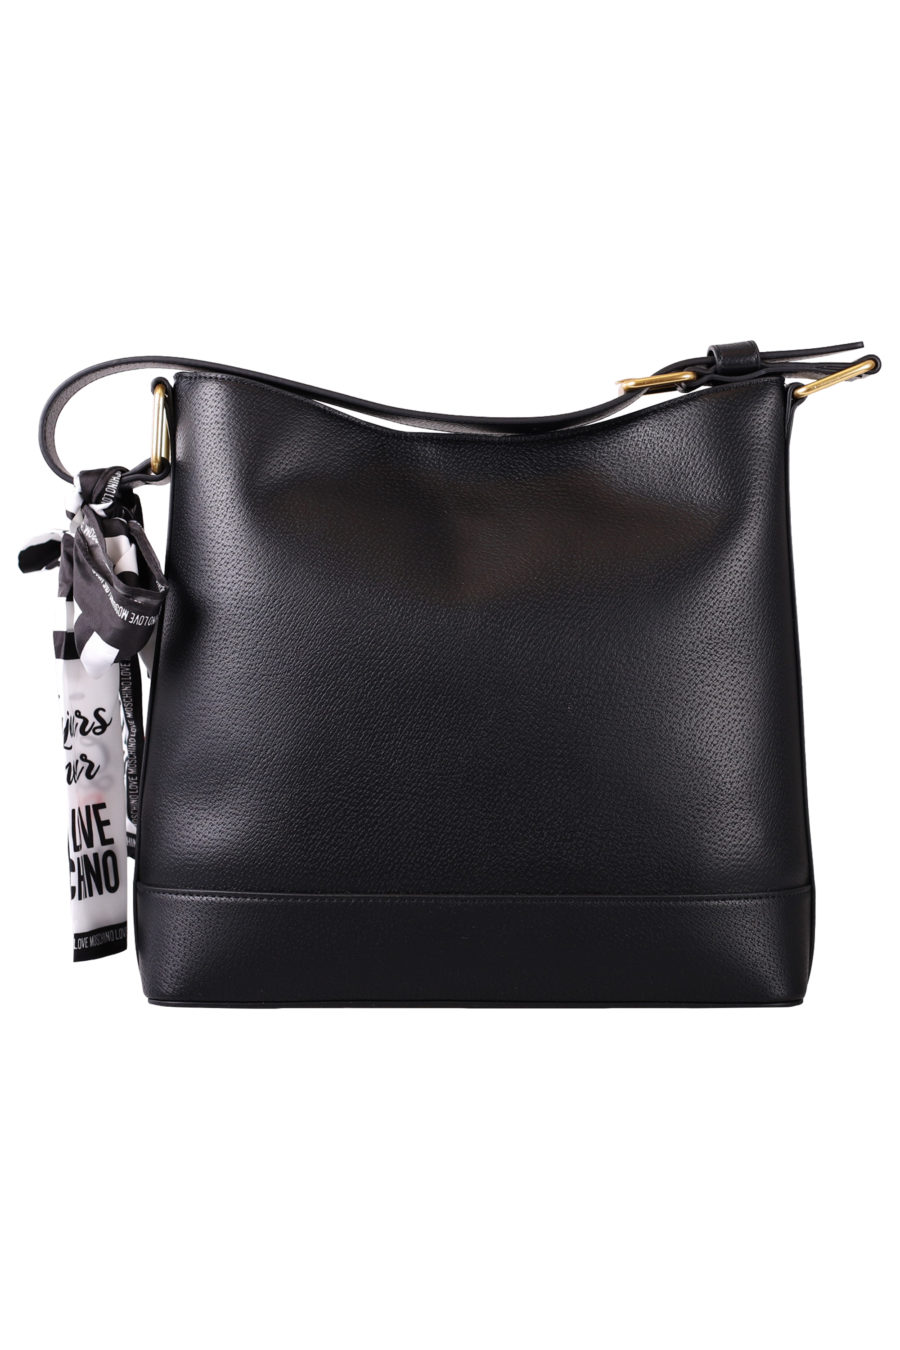 Black handbag with scarf - IMG 7063